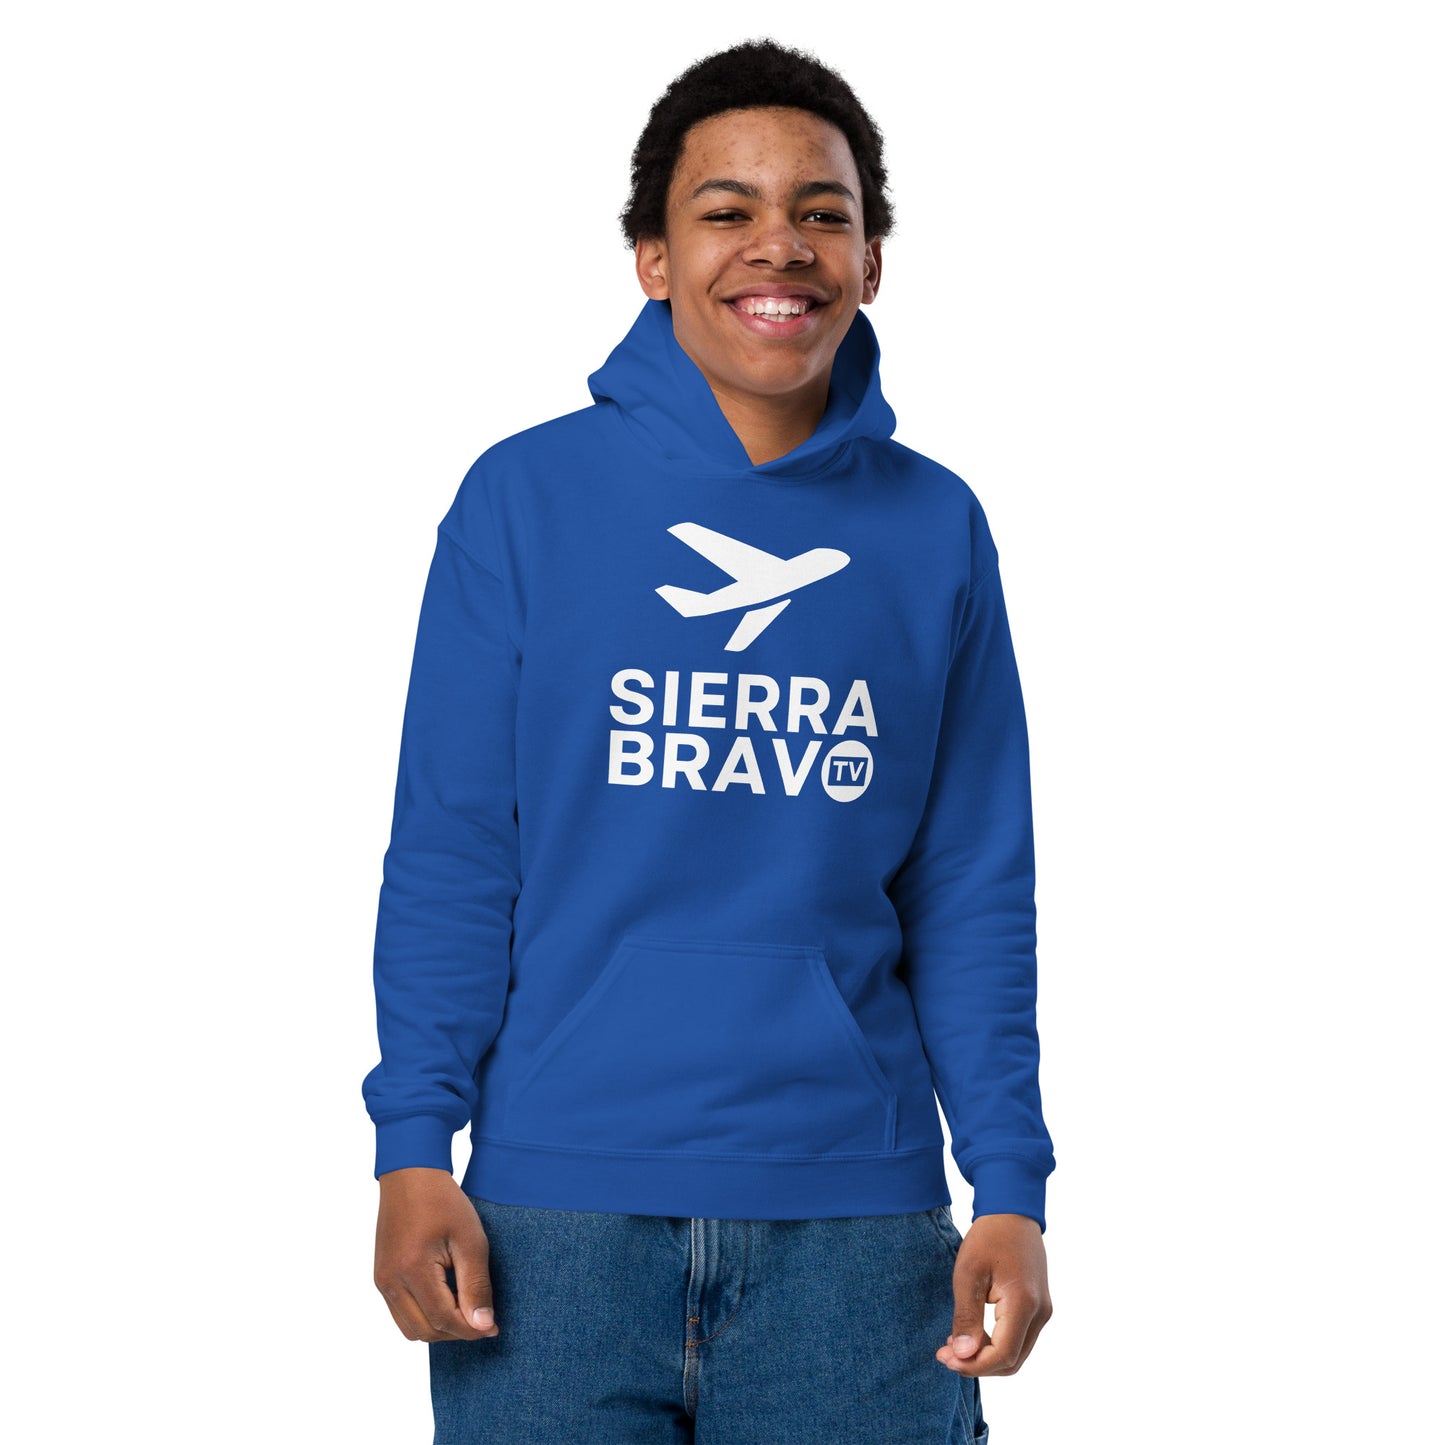 Sierra Bravo TV Youth heavy blend hoodie